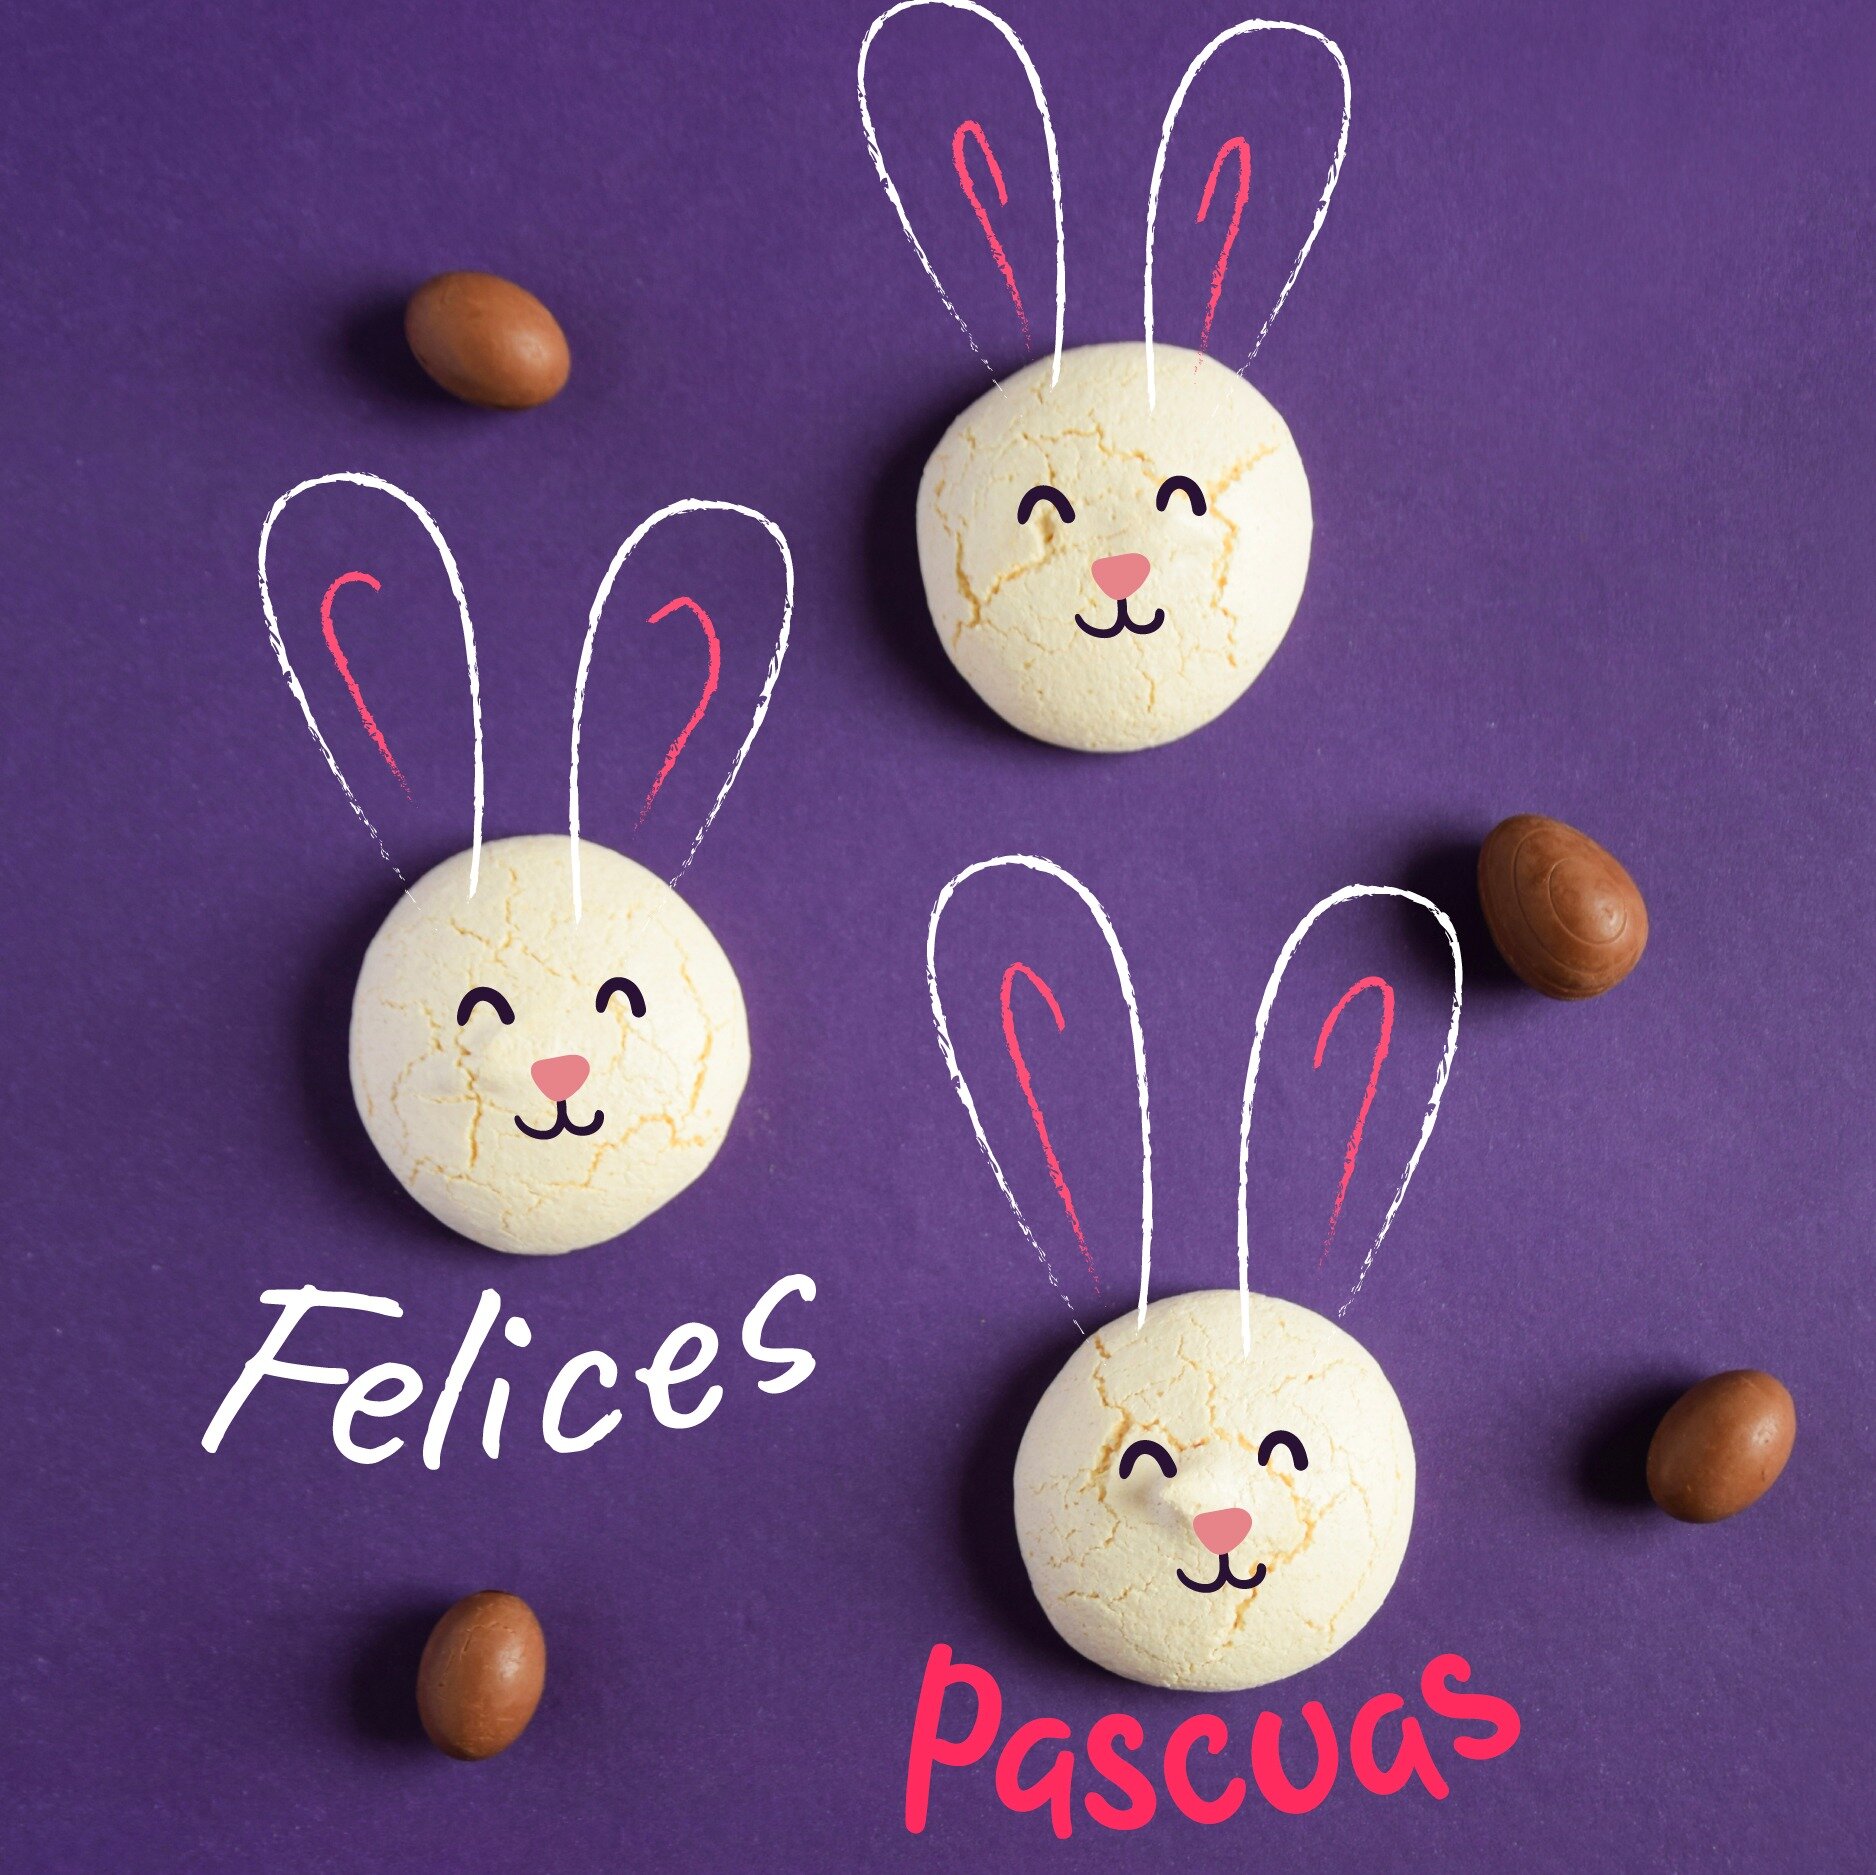 Felices pascuas a todos nuestros seguidores fan&aacute;ticos de los merengues!
.
.
.
.
.
.
.
#merengues #merenguitos #pascuas #dulcespascuas #felicespascuas #pascuas2024 #chocolate #pascuas🐰